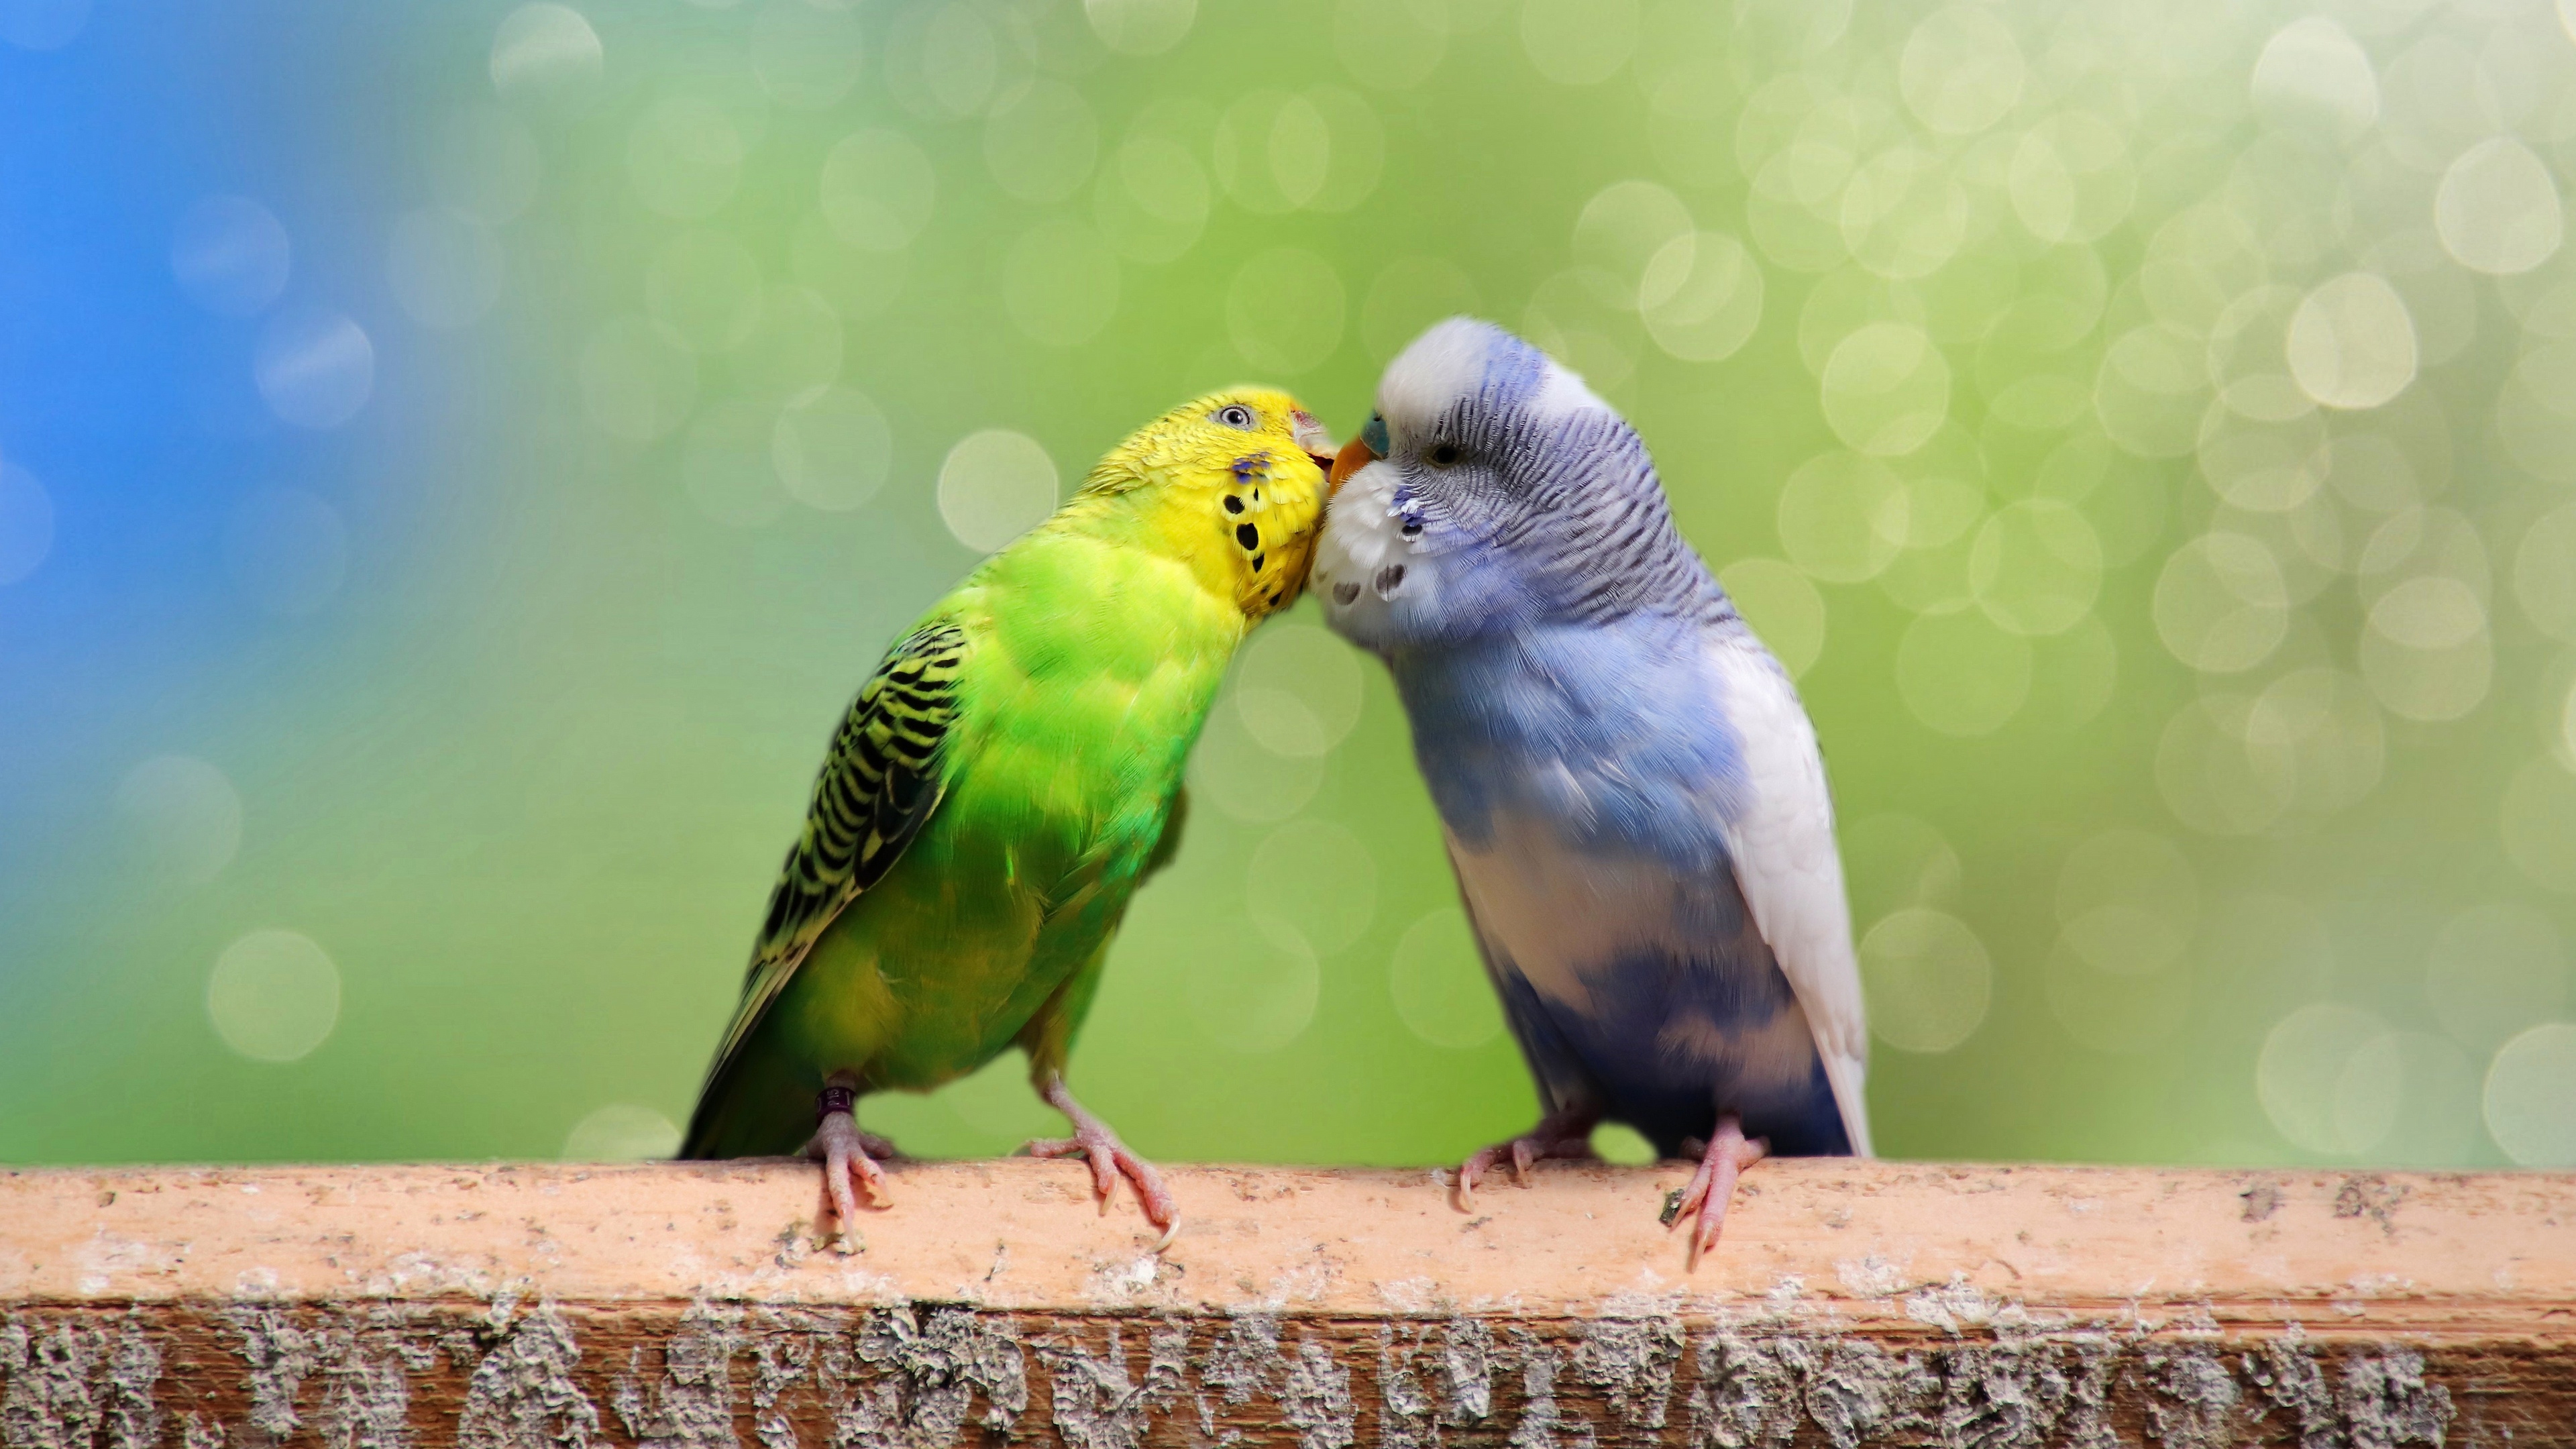 Бесплатное фото Пара волнистых попугаев целуется на размытом фоне